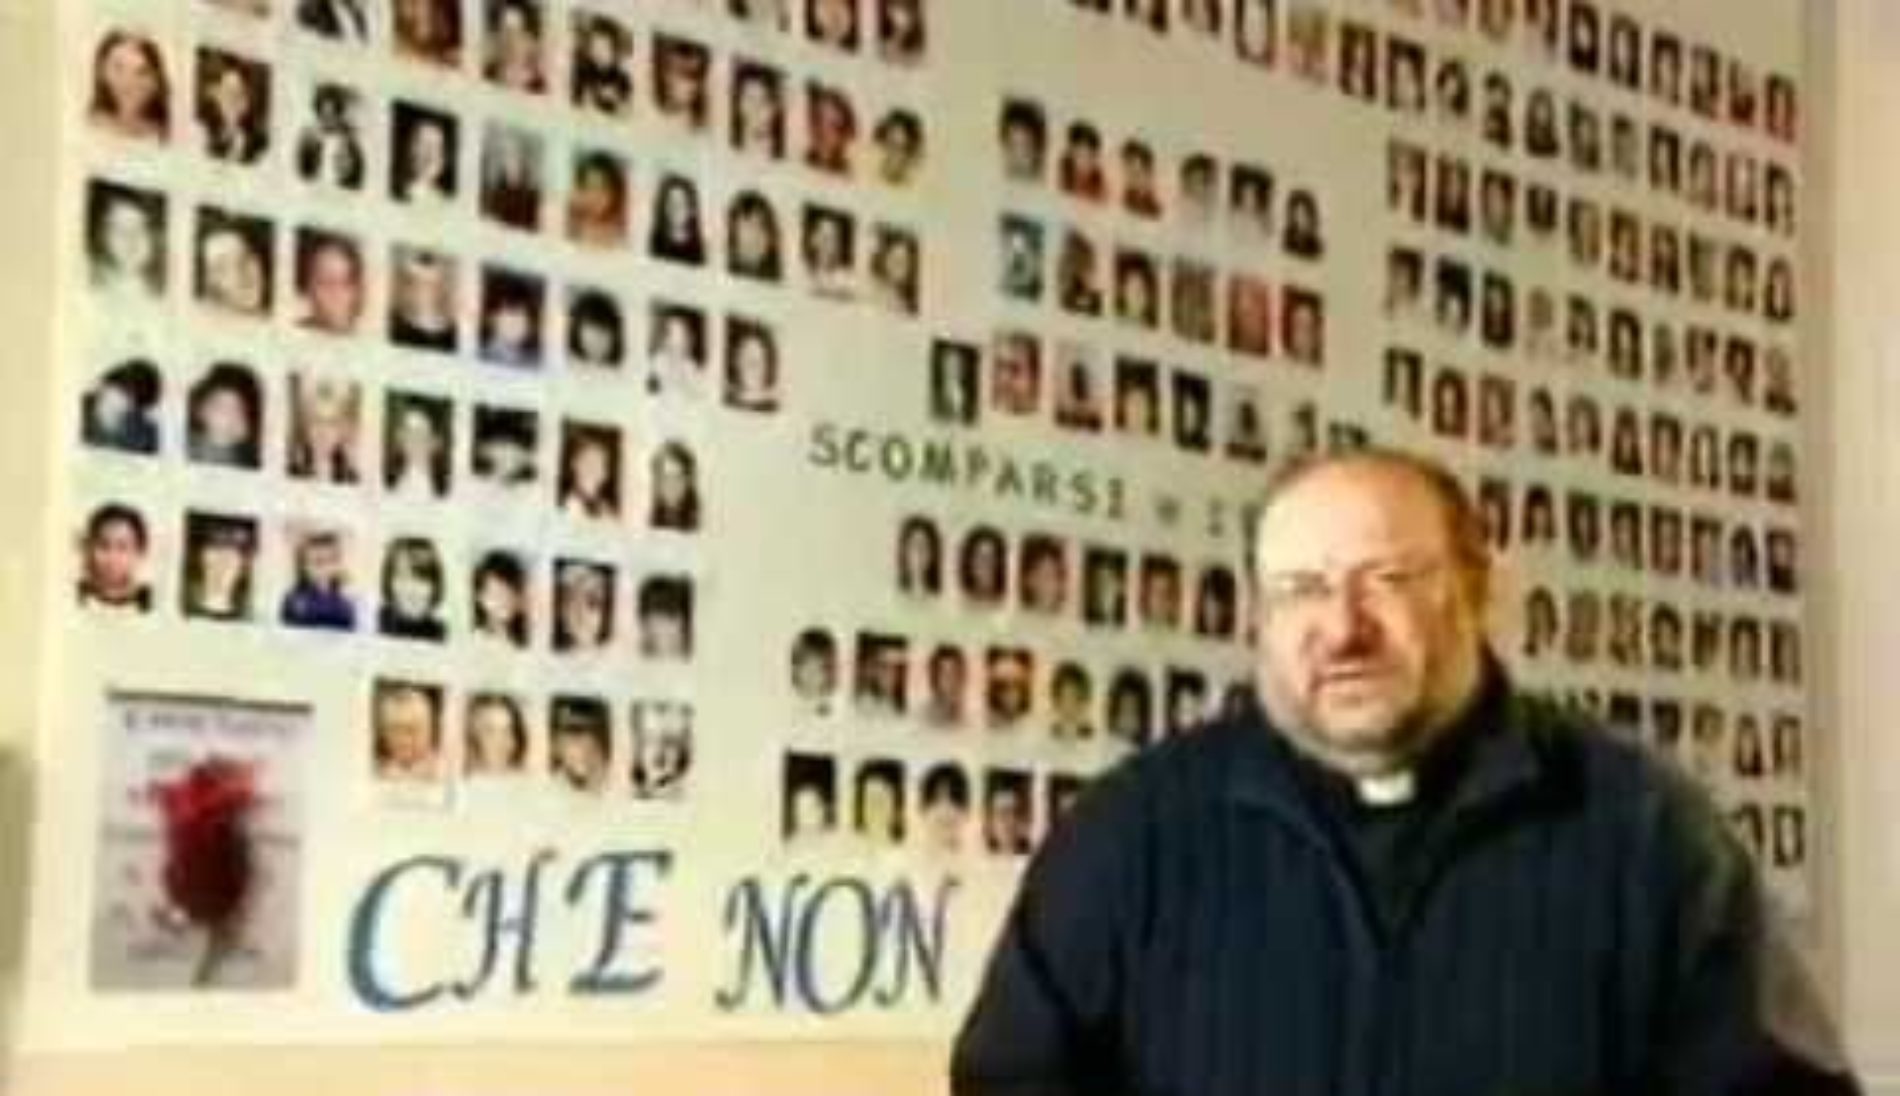 Lecce – 16enne scomparsa, Don di Noto (meter): “Sgomento e tristezza. non dovrebbe accadere tra i giovani questa violenza”.